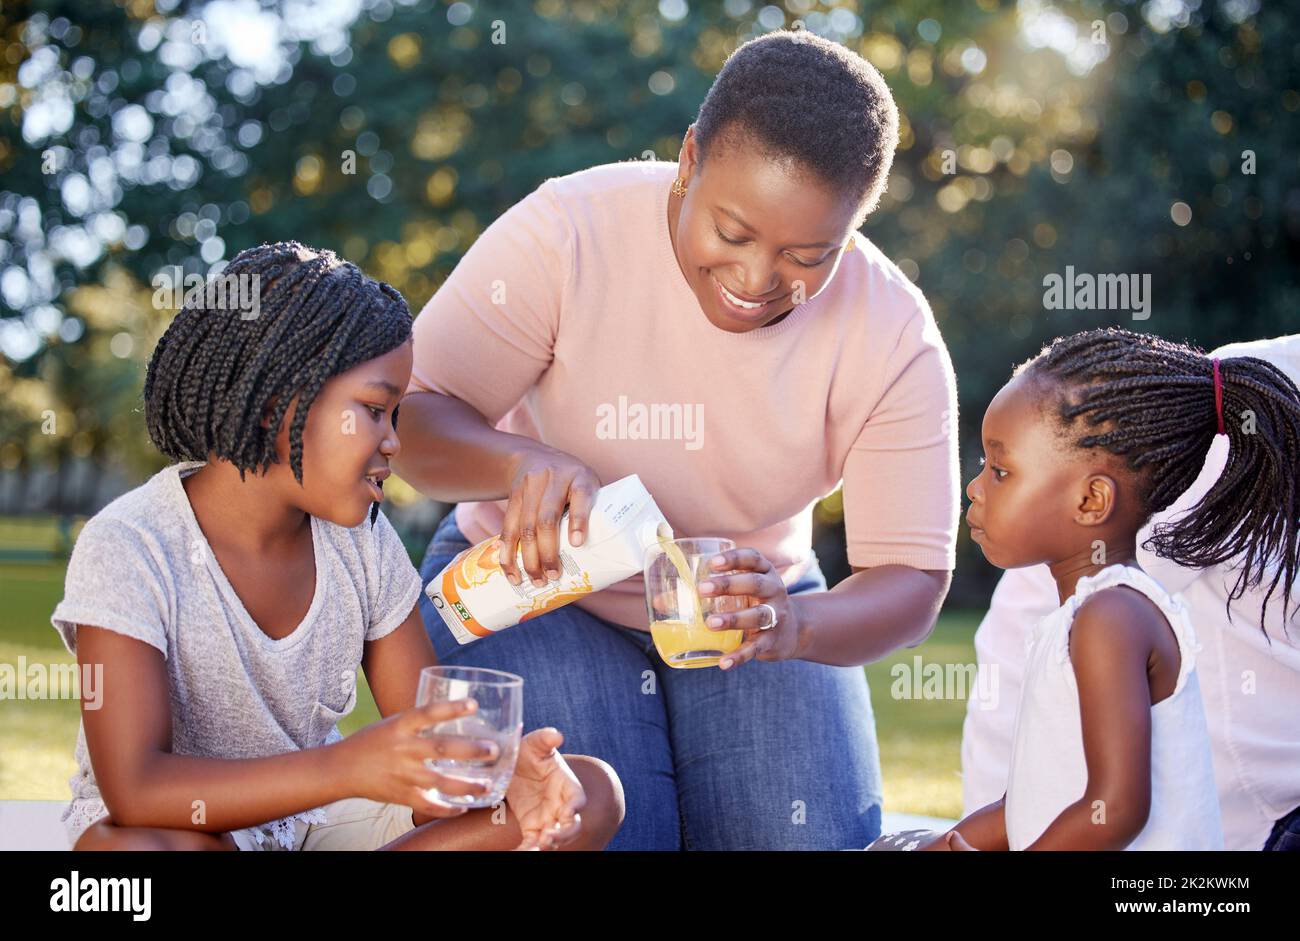 Schwarze Frau, Park und Kinder Familie Getränke Saft für eine gesunde Ernährung oder Wellness Ernährungsberater Ernährung auf Picknick. Mutter mit Mädchen Kinder oder schwarz Stockfoto